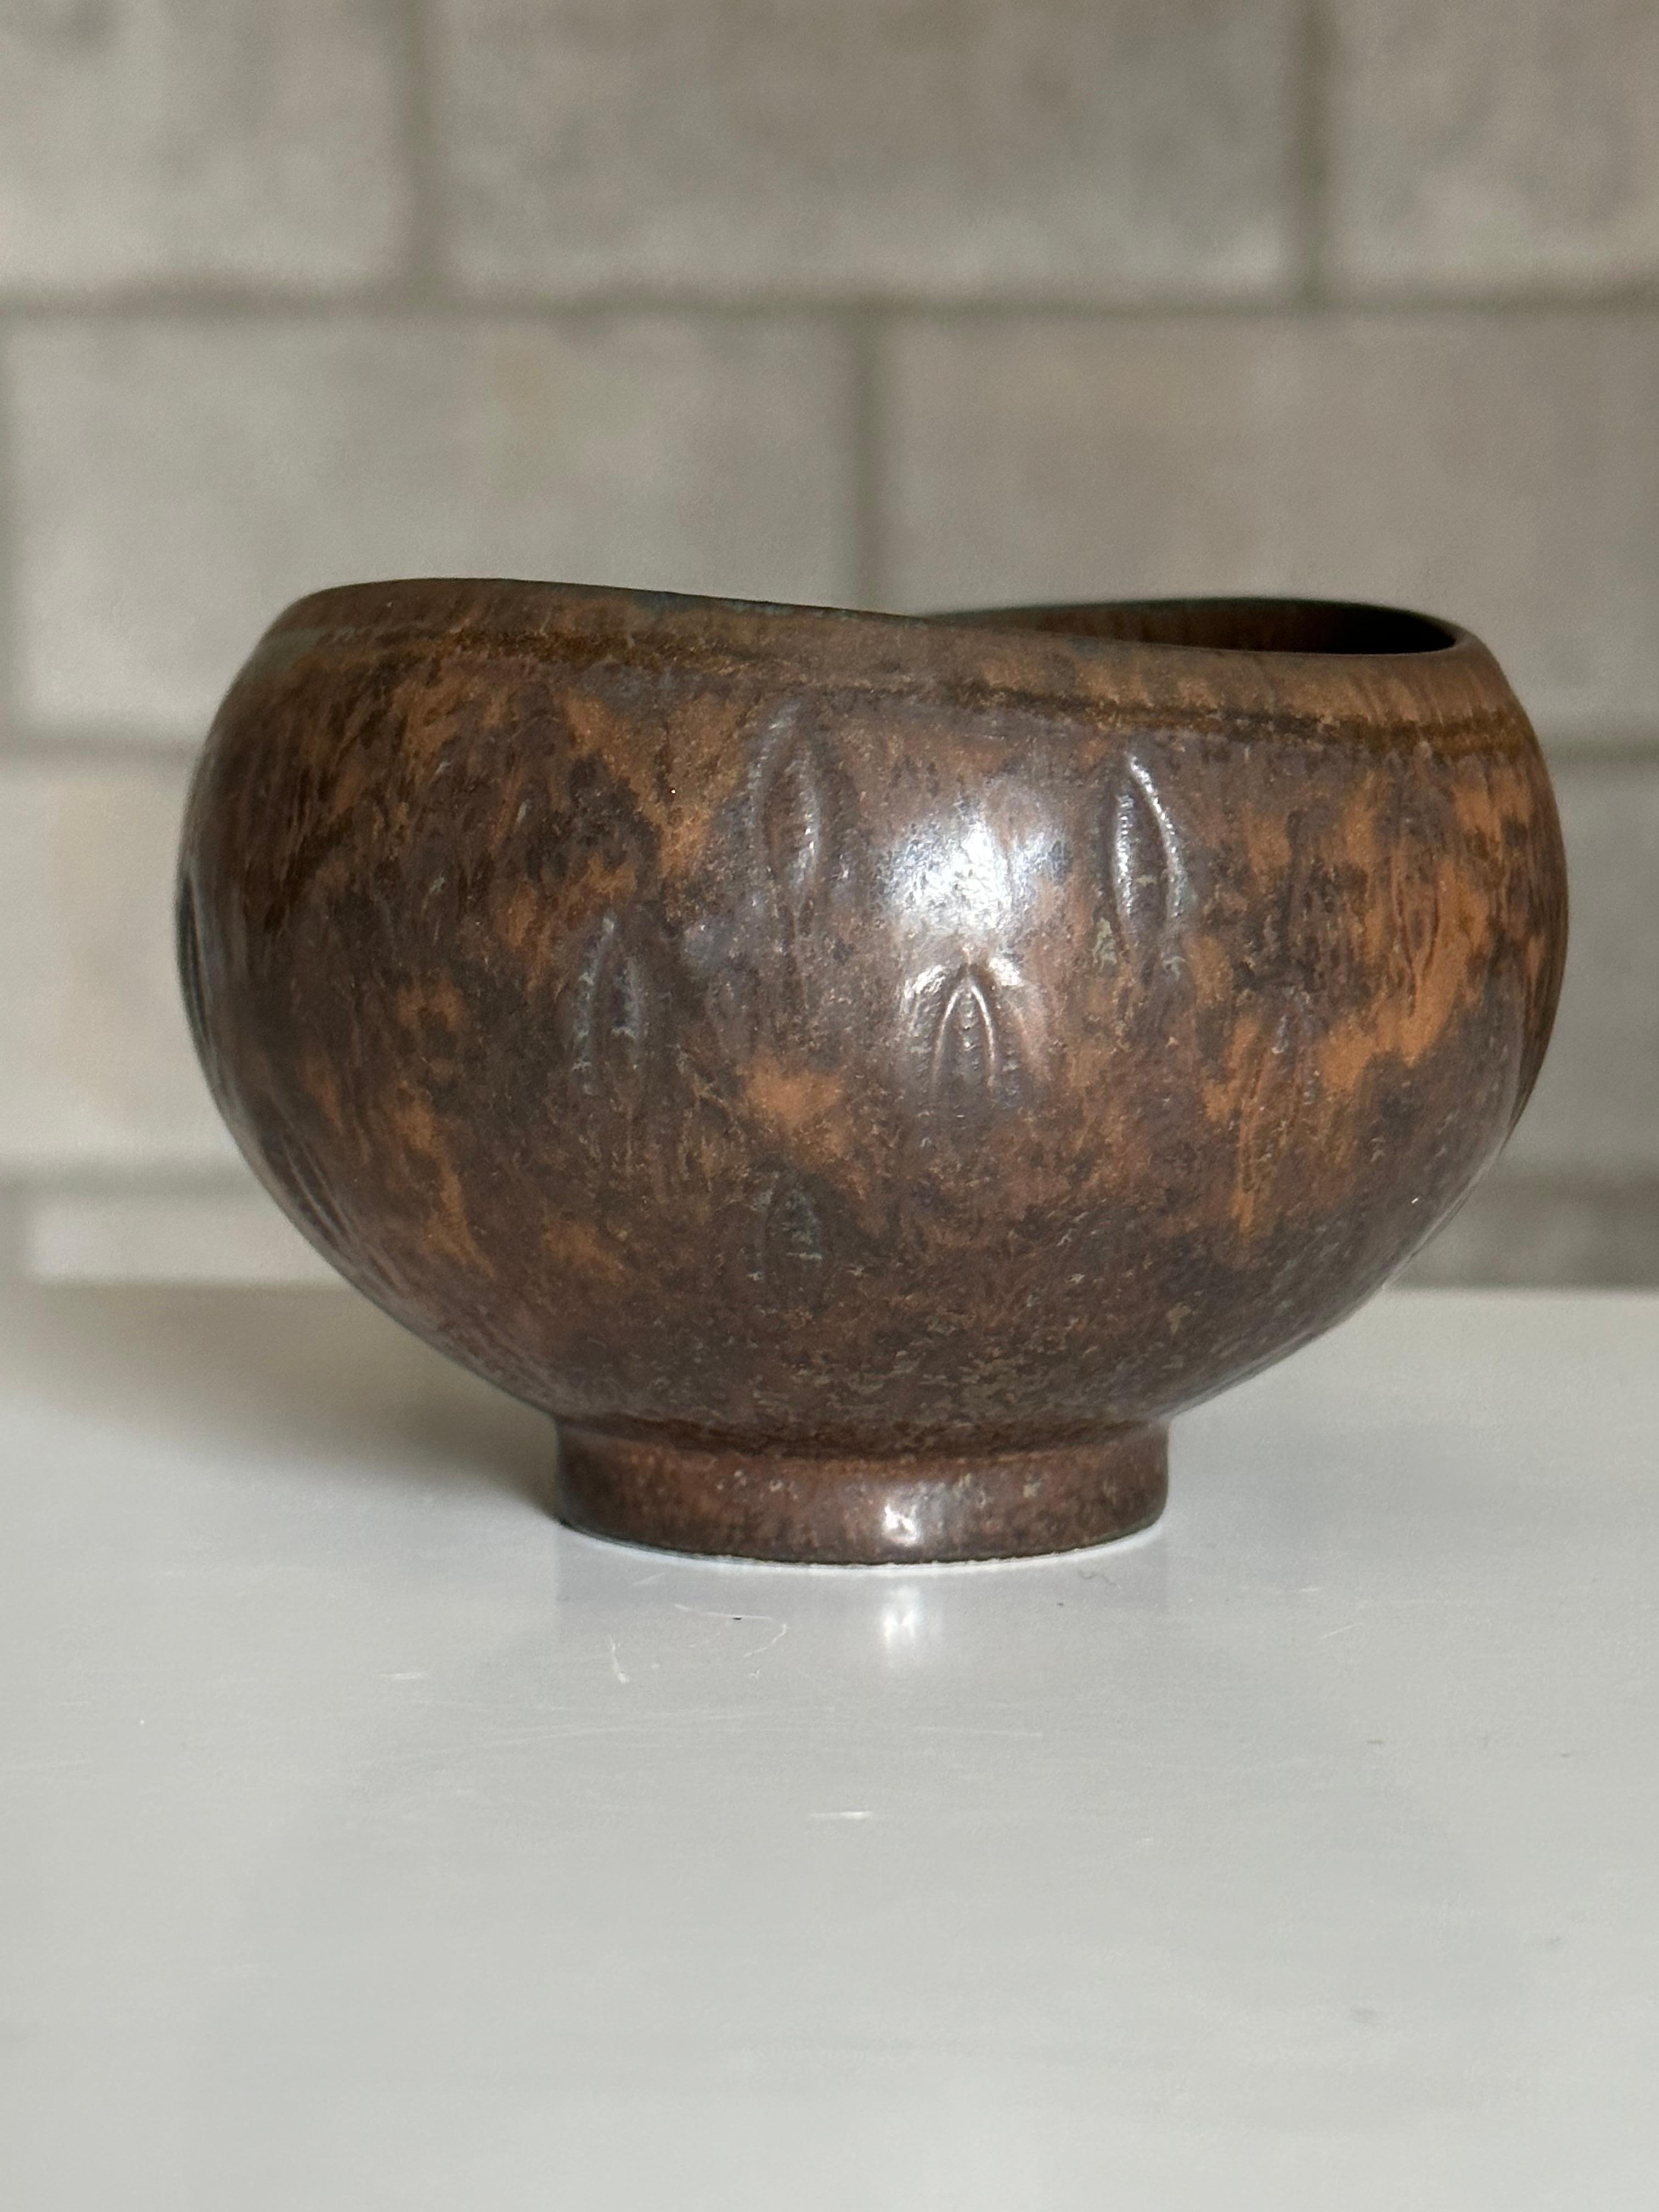 Merveilleux petit bol conçu par Gunnar Nylund pour Rörstrand. Le bol est d'une couleur unique, brun rouille ou terre cuite. Motif inhabituel autour de l'extérieur de la coupe, avec un motif presque répétitif ressemblant à une feuille. 
